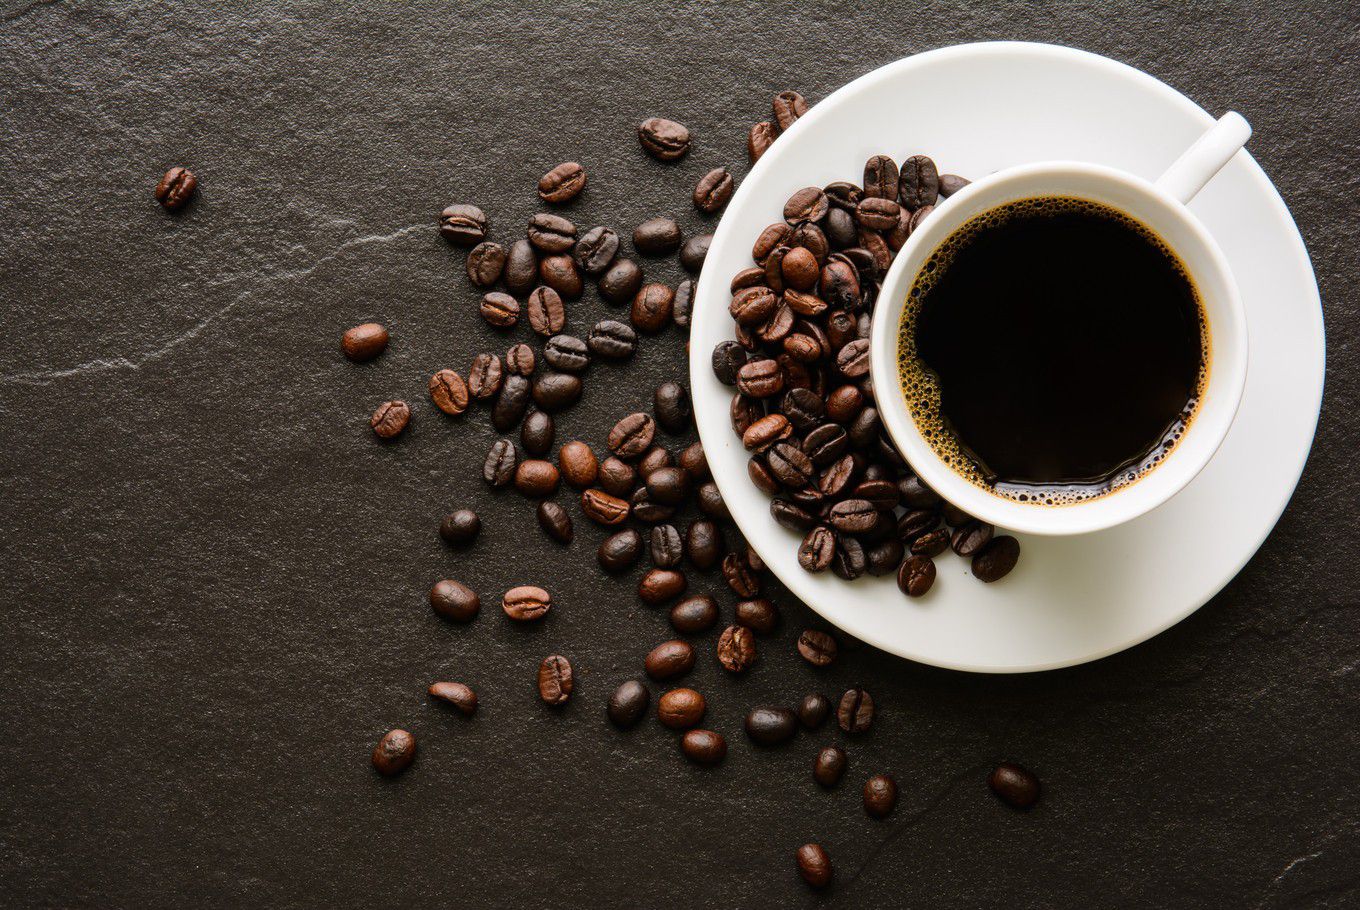 القهوة السوداء للتنحيف وانقاص الوزن دون مخاطر أو آثار جانبية